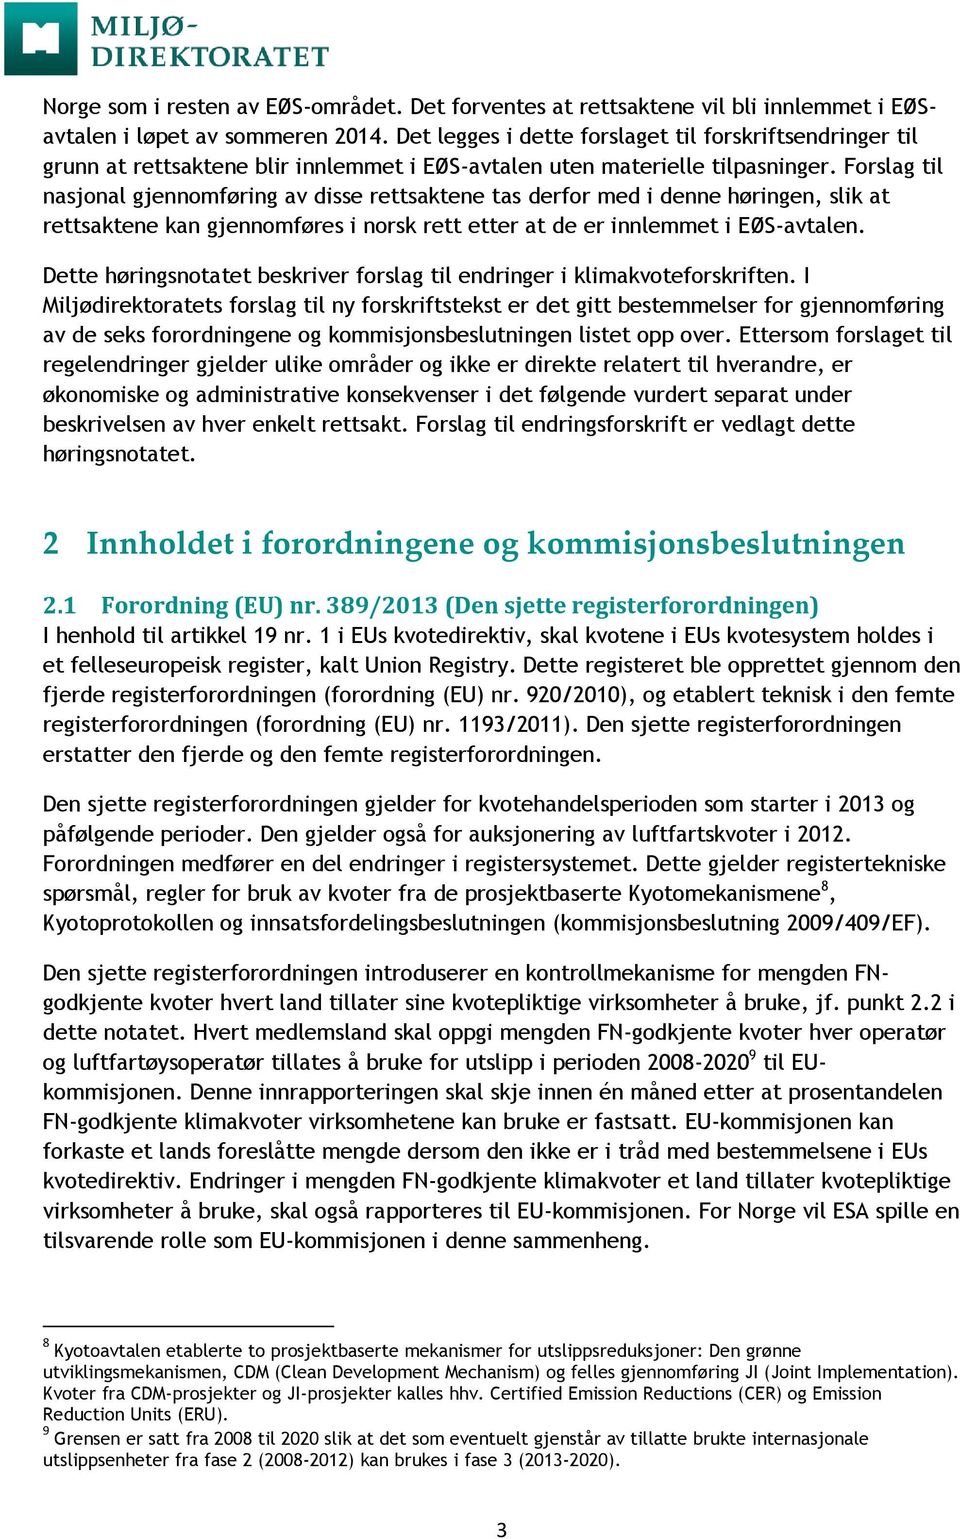 Forslag til nasjonal gjennomføring av disse rettsaktene tas derfor med i denne høringen, slik at rettsaktene kan gjennomføres i norsk rett etter at de er innlemmet i EØS-avtalen.